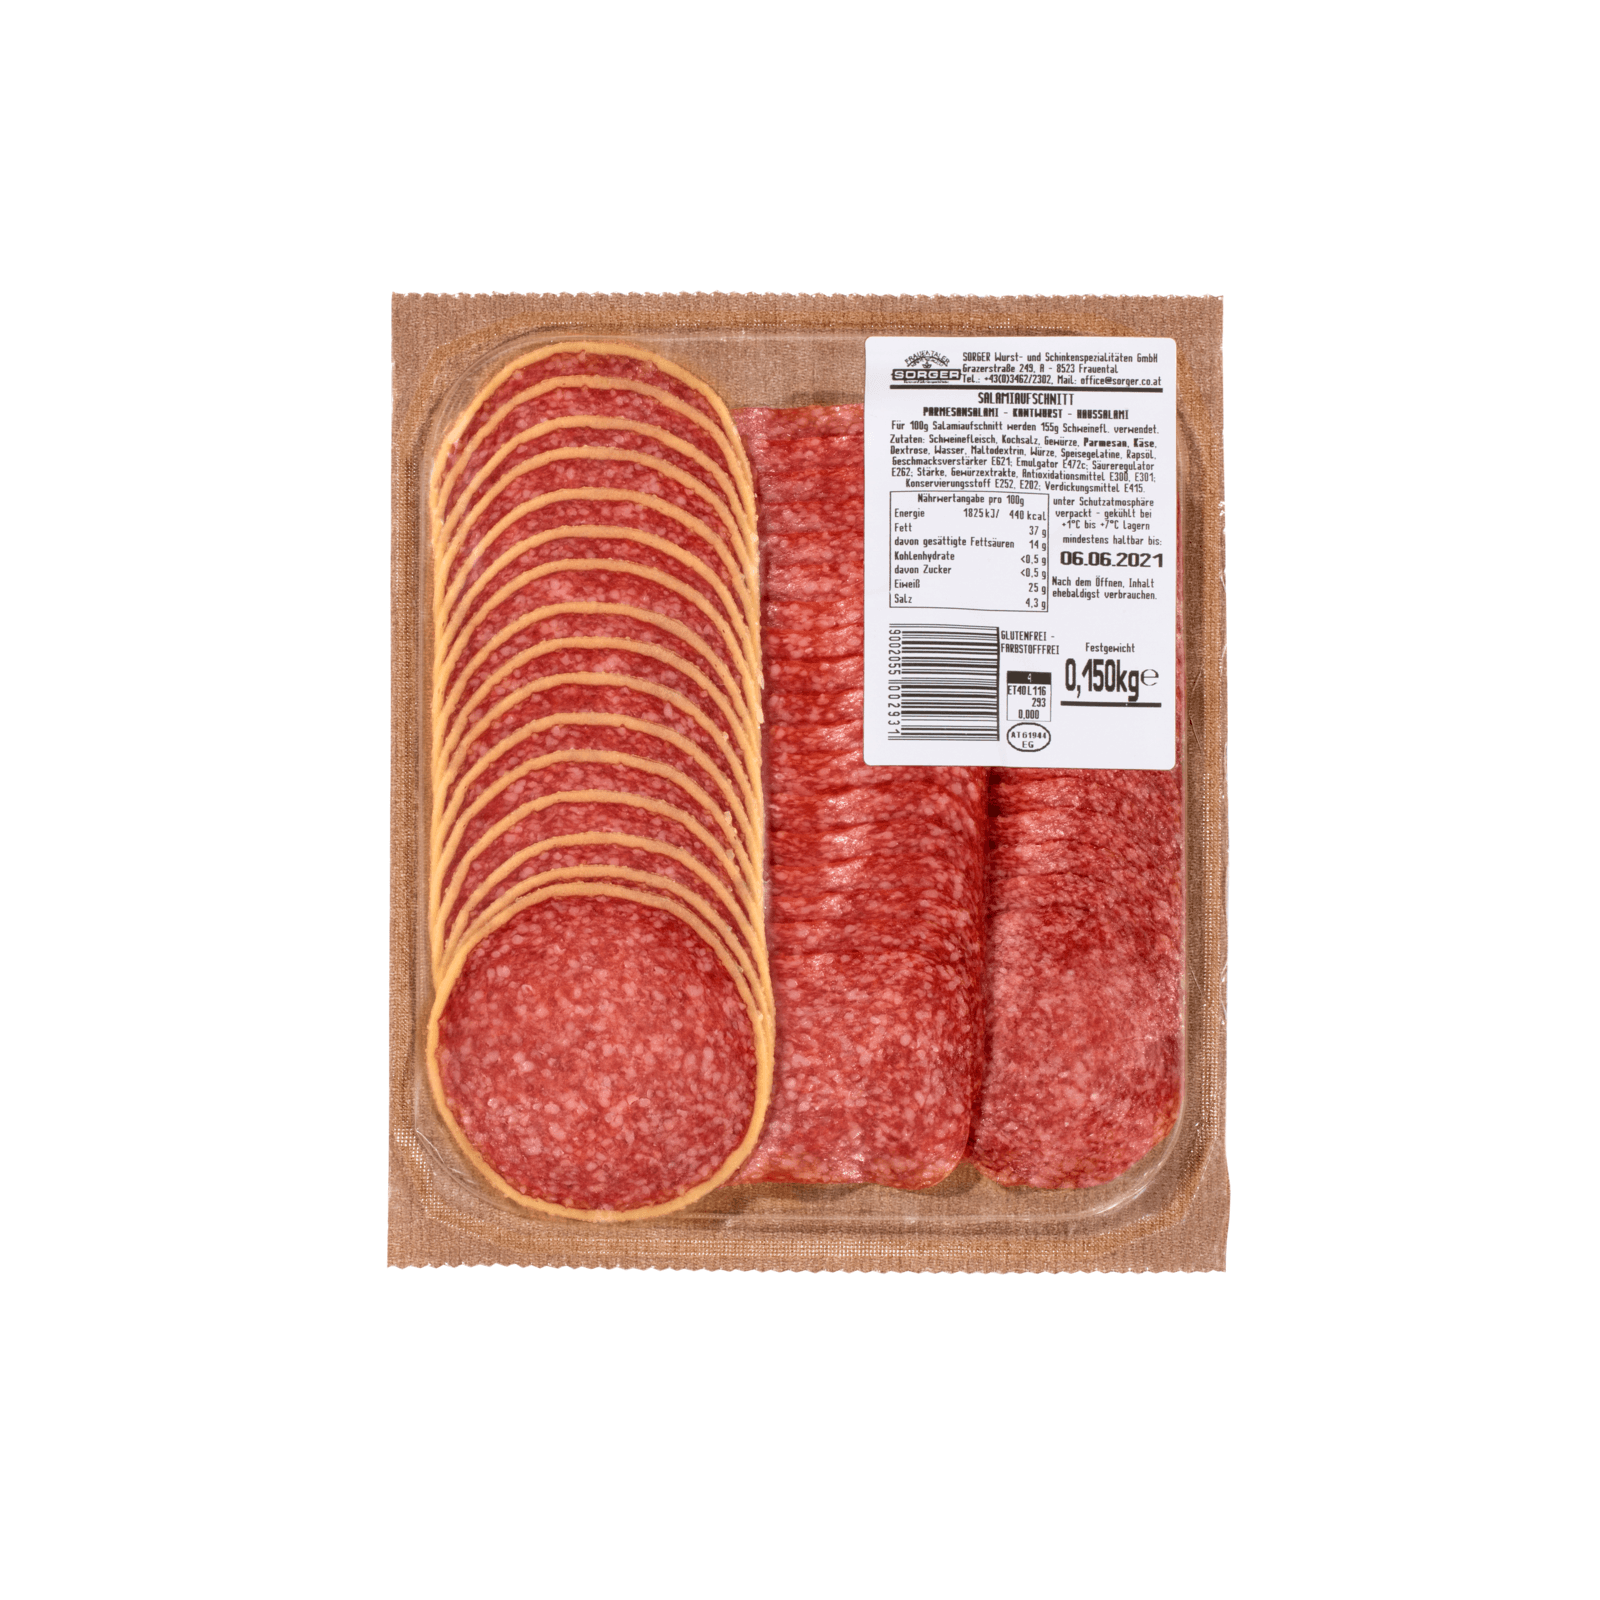 REWE.de Seite - Salami online - Paprikawurst & 5 kaufen